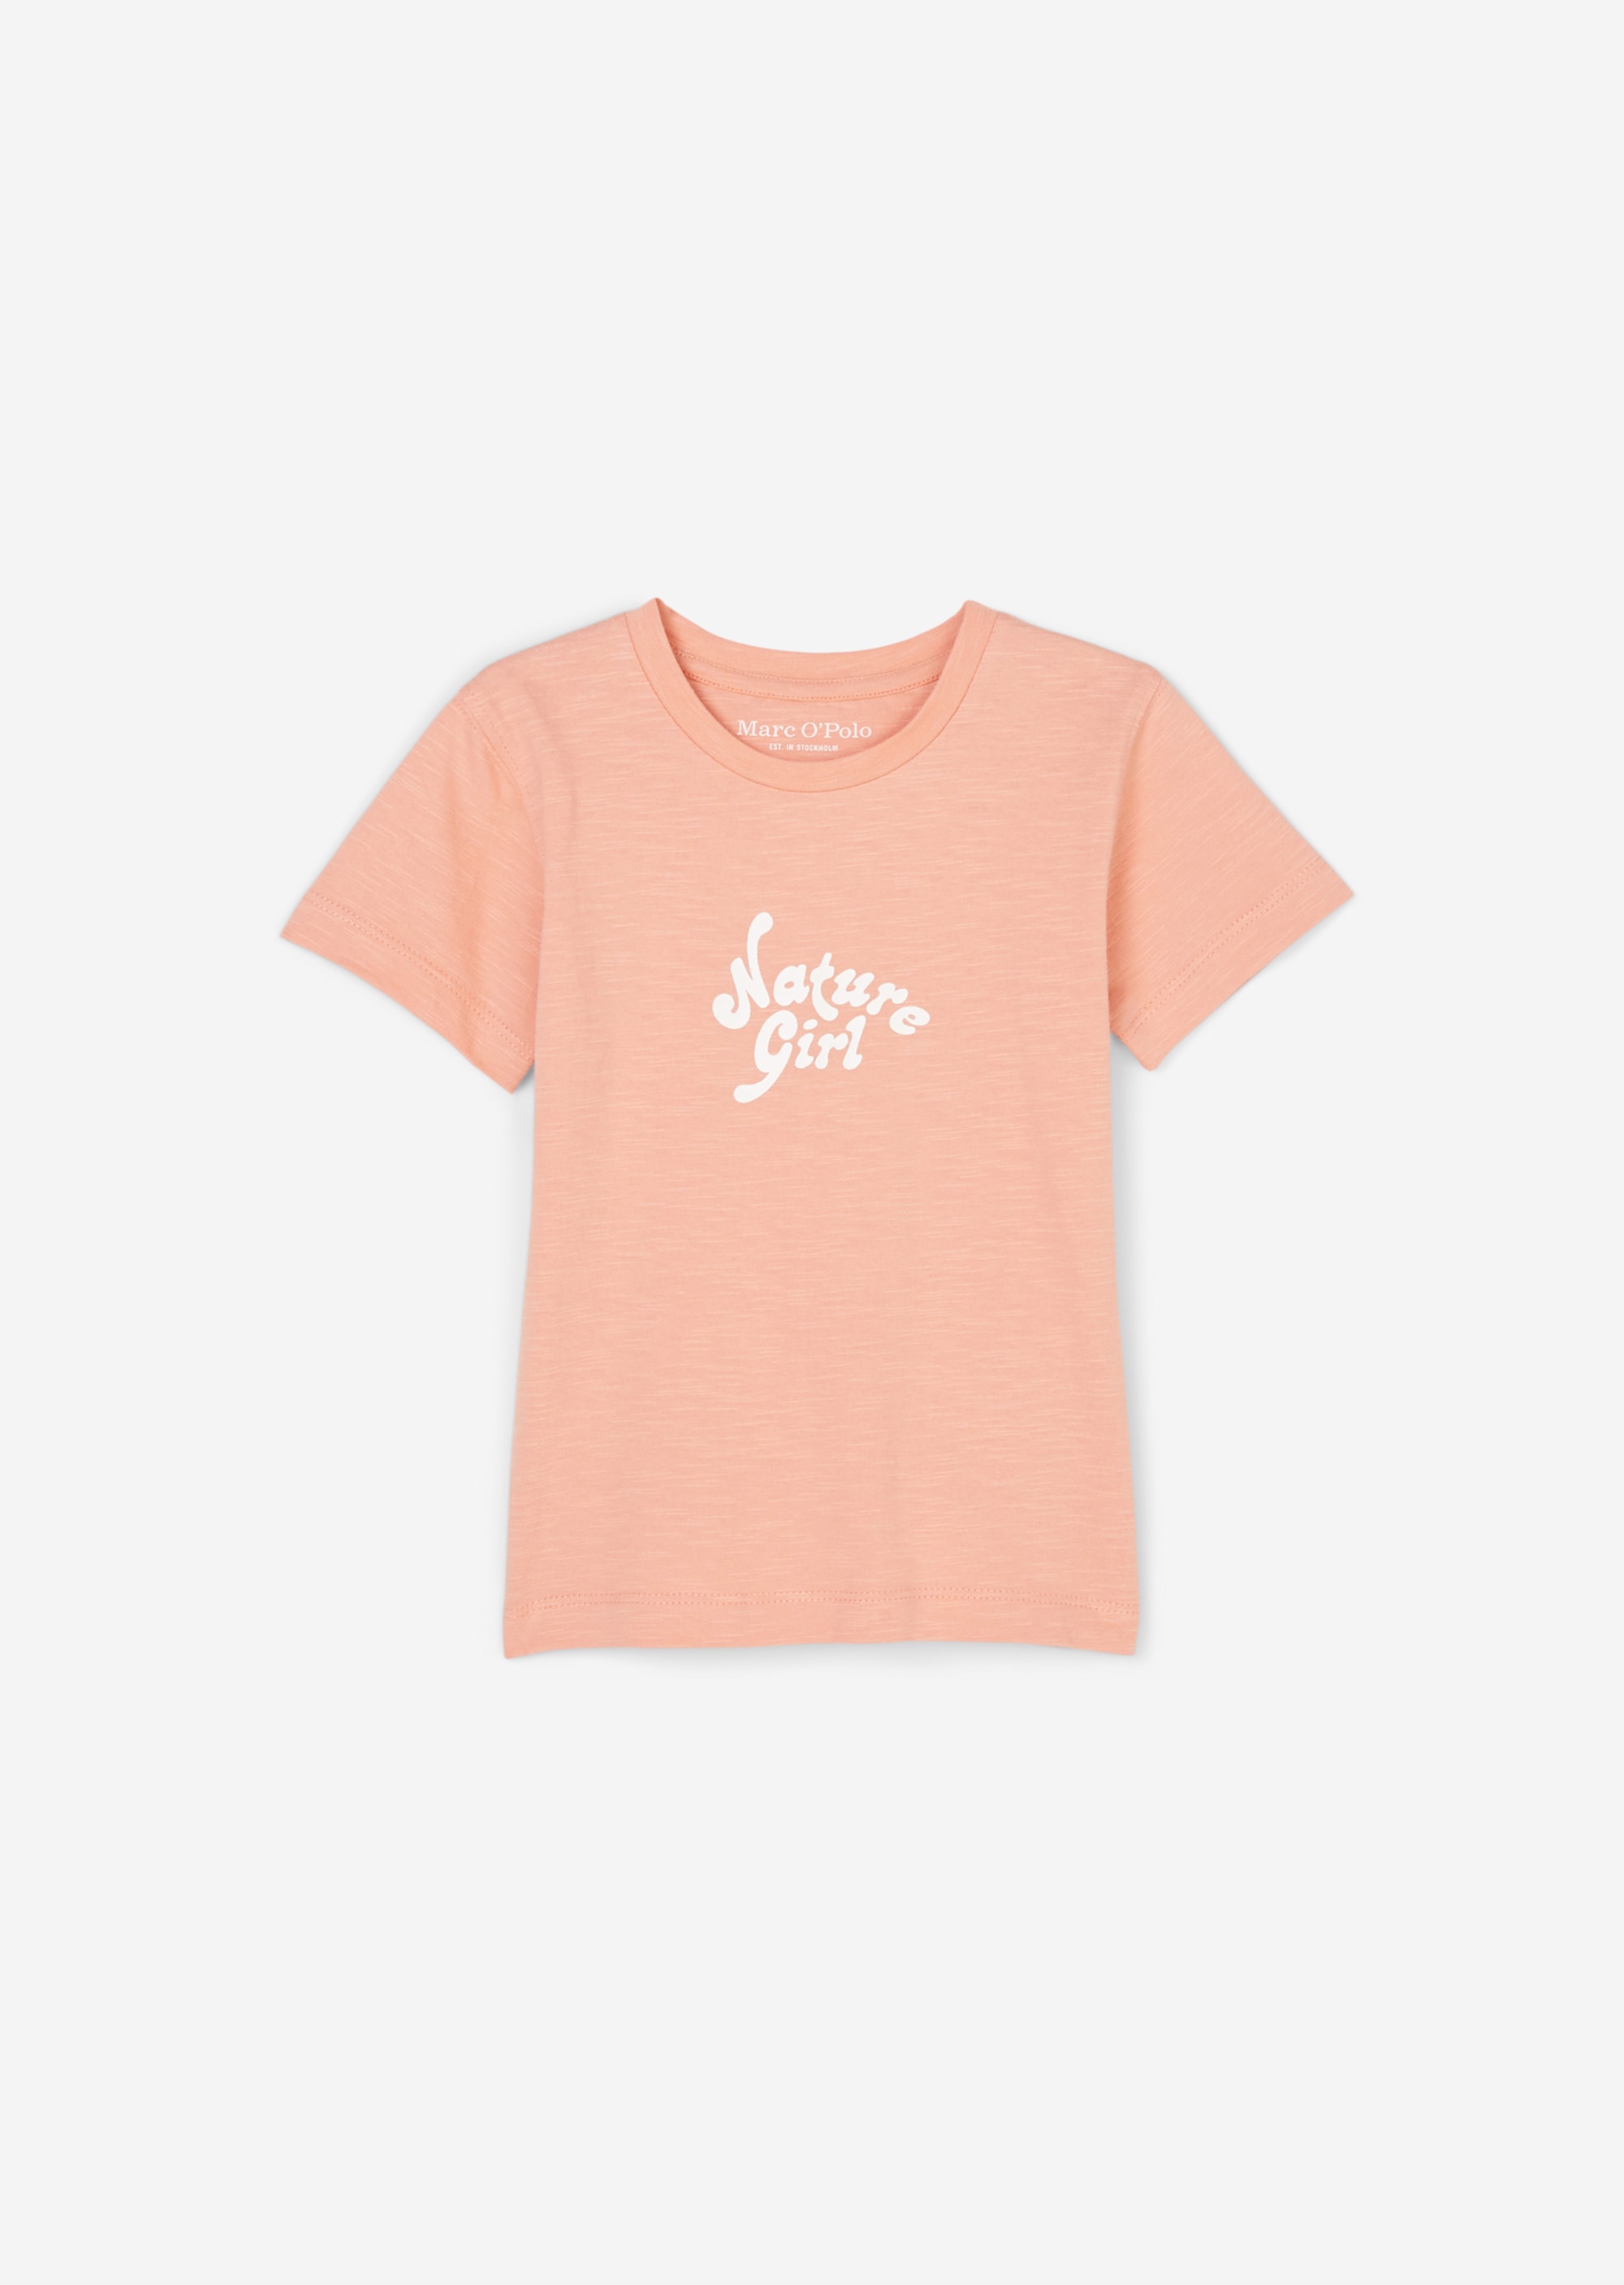 Marc OPolo Girls T-Shirt